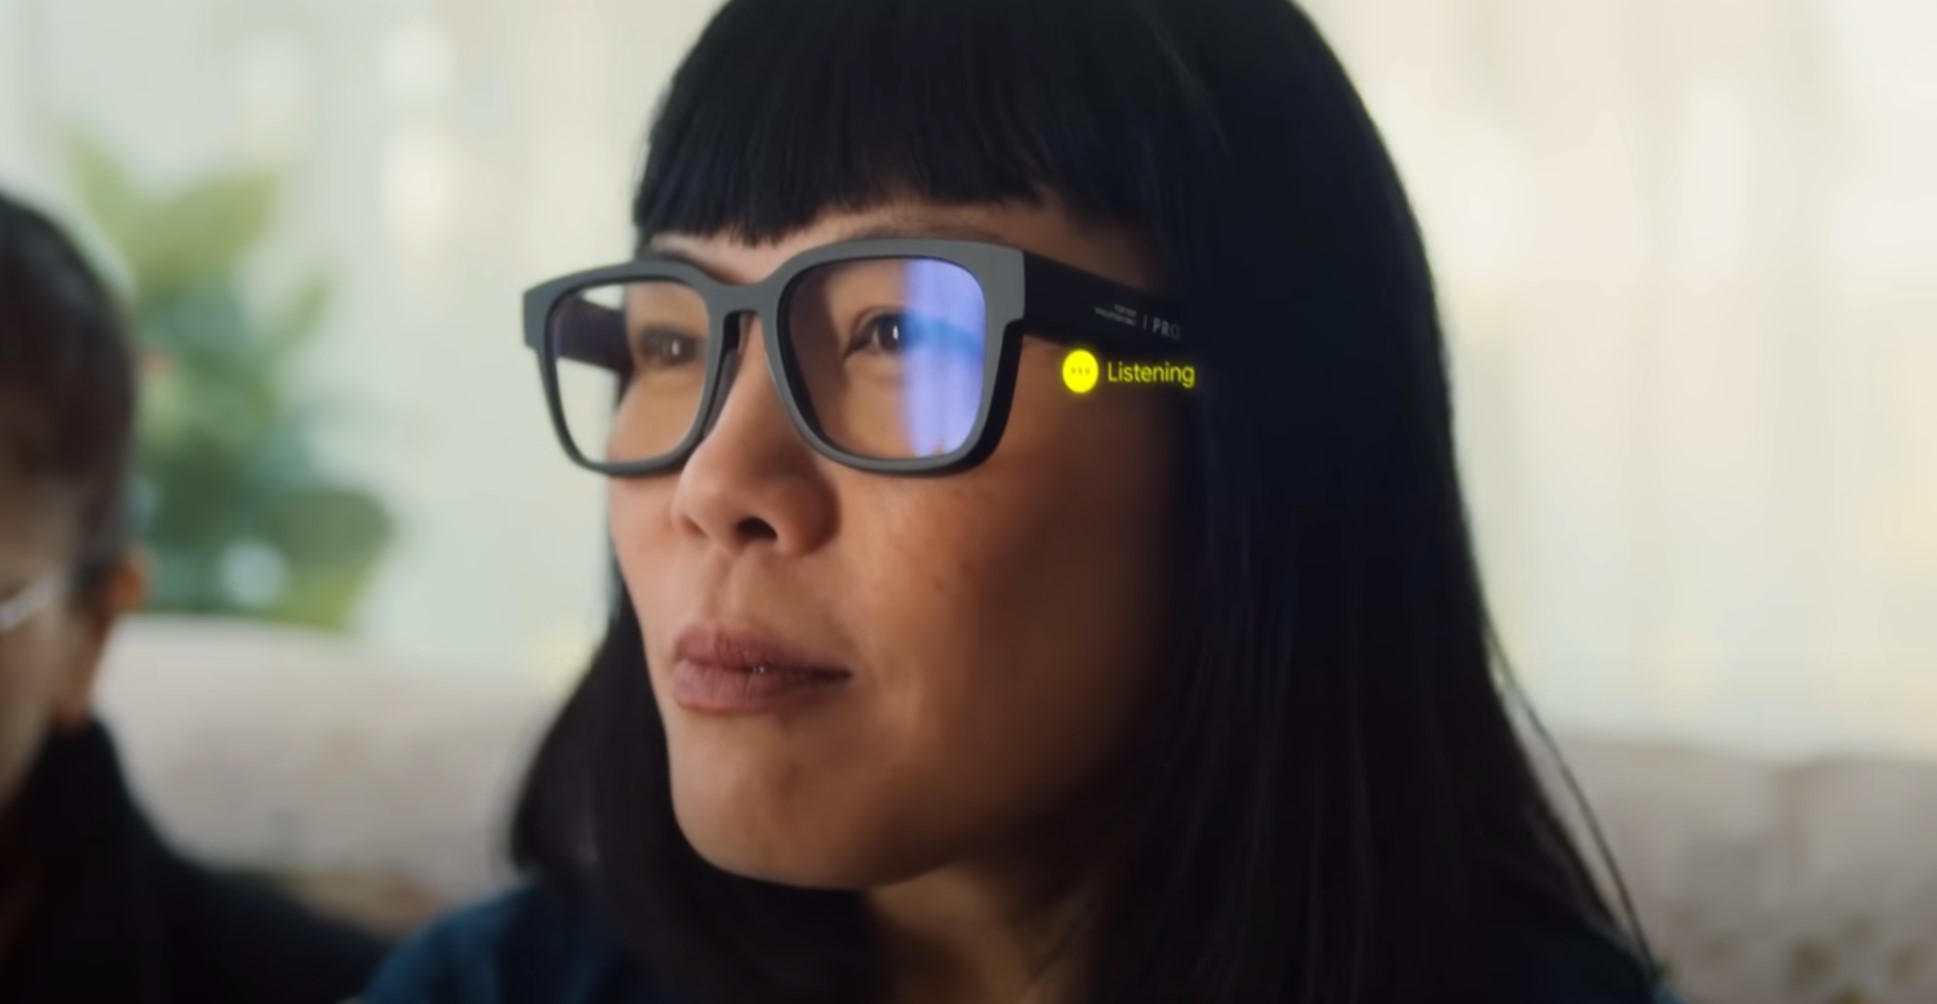 Se espera que Google pruebe en público unas nuevas gafas de realidad aumentada el mes que viene